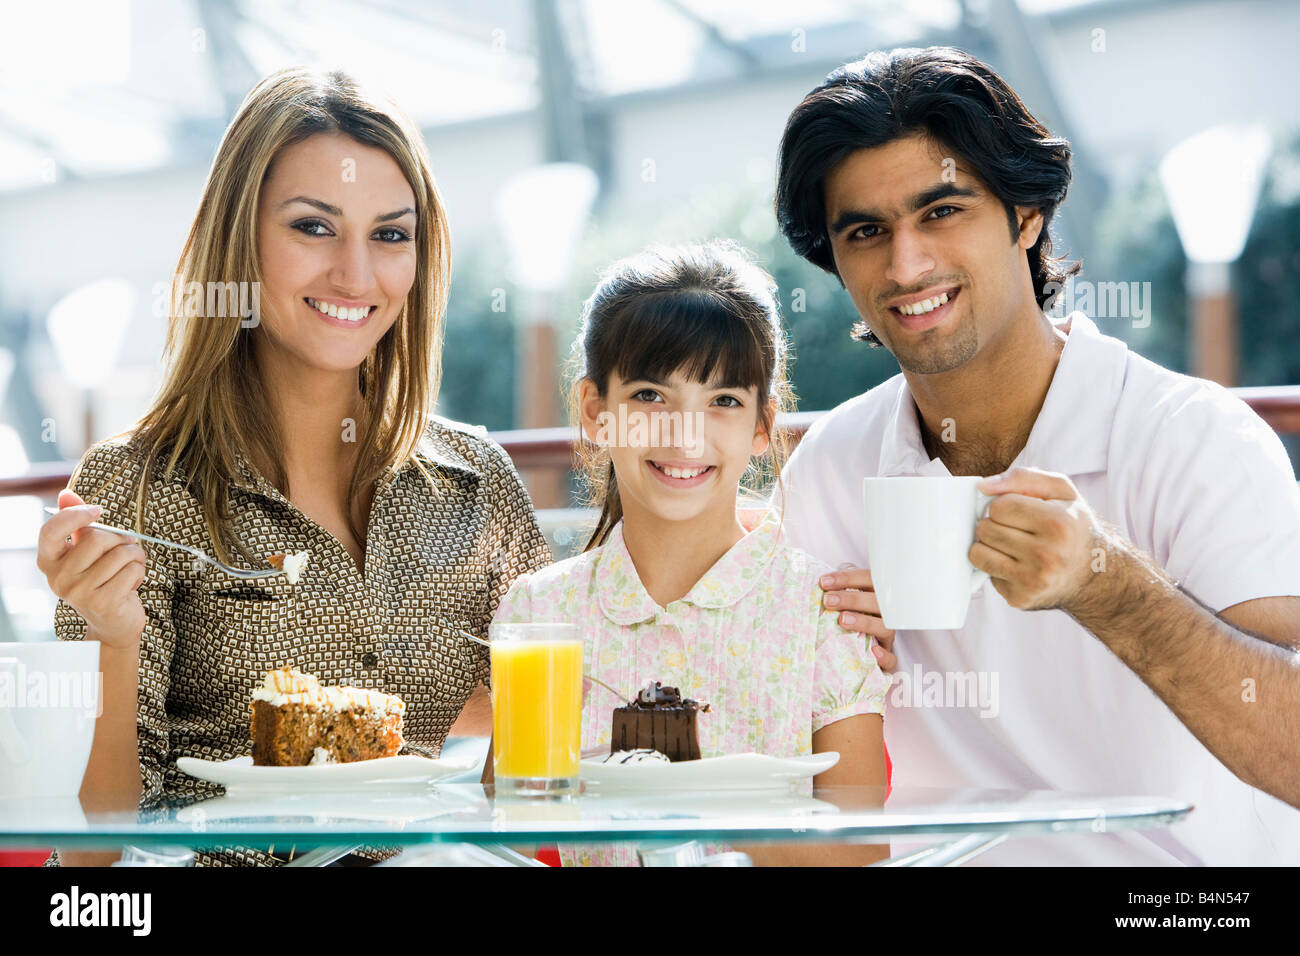 Familie im Restaurant Essen Dessert und lächelnd (Tiefenschärfe) Stockfoto